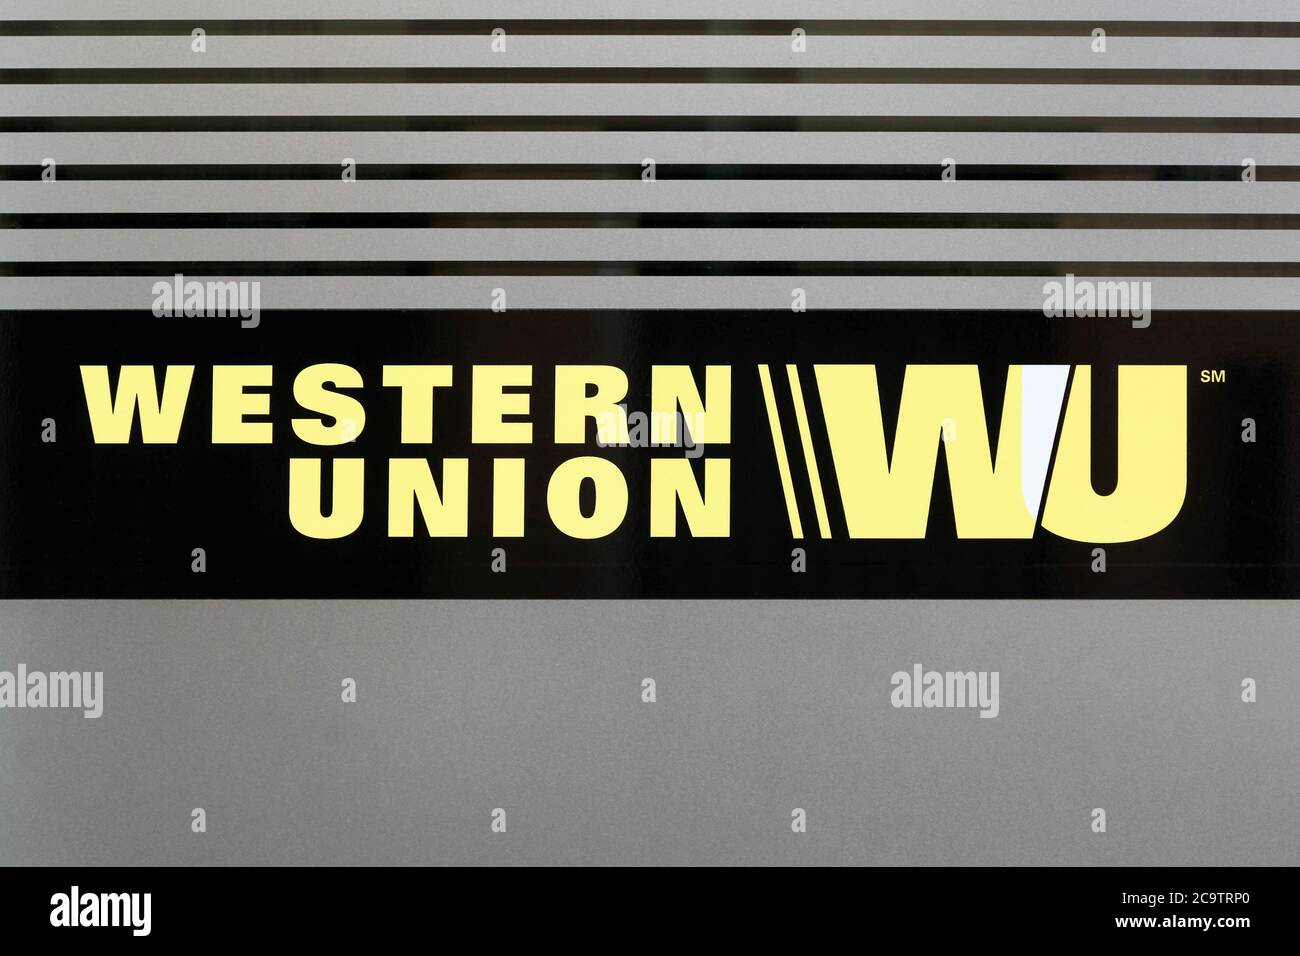 Lyon, Frankreich - 19. Juli 2018: Westunion-Schild an einer Fassade. Das Unternehmen Western Union ist ein amerikanisches Finanzdienstleistungs- und Kommunikationsunternehmen Stockfoto